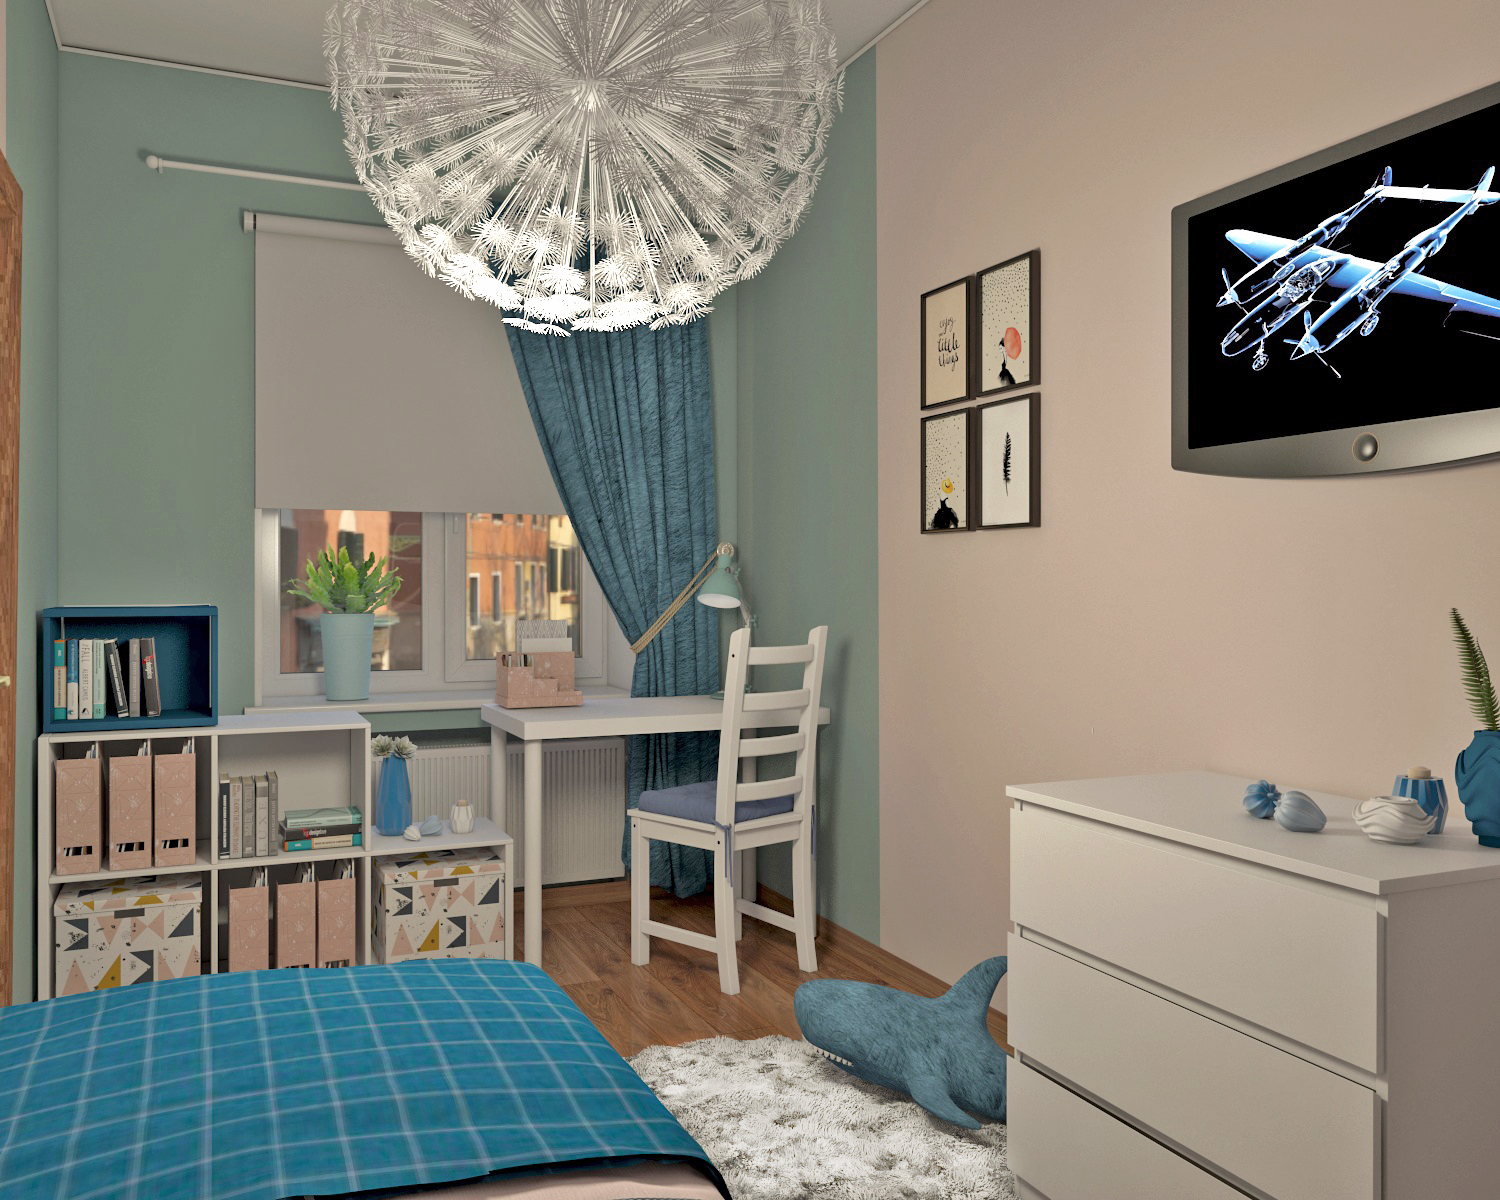 Chambre d’enfant pour une fille dans 3d max vray 3.0 image